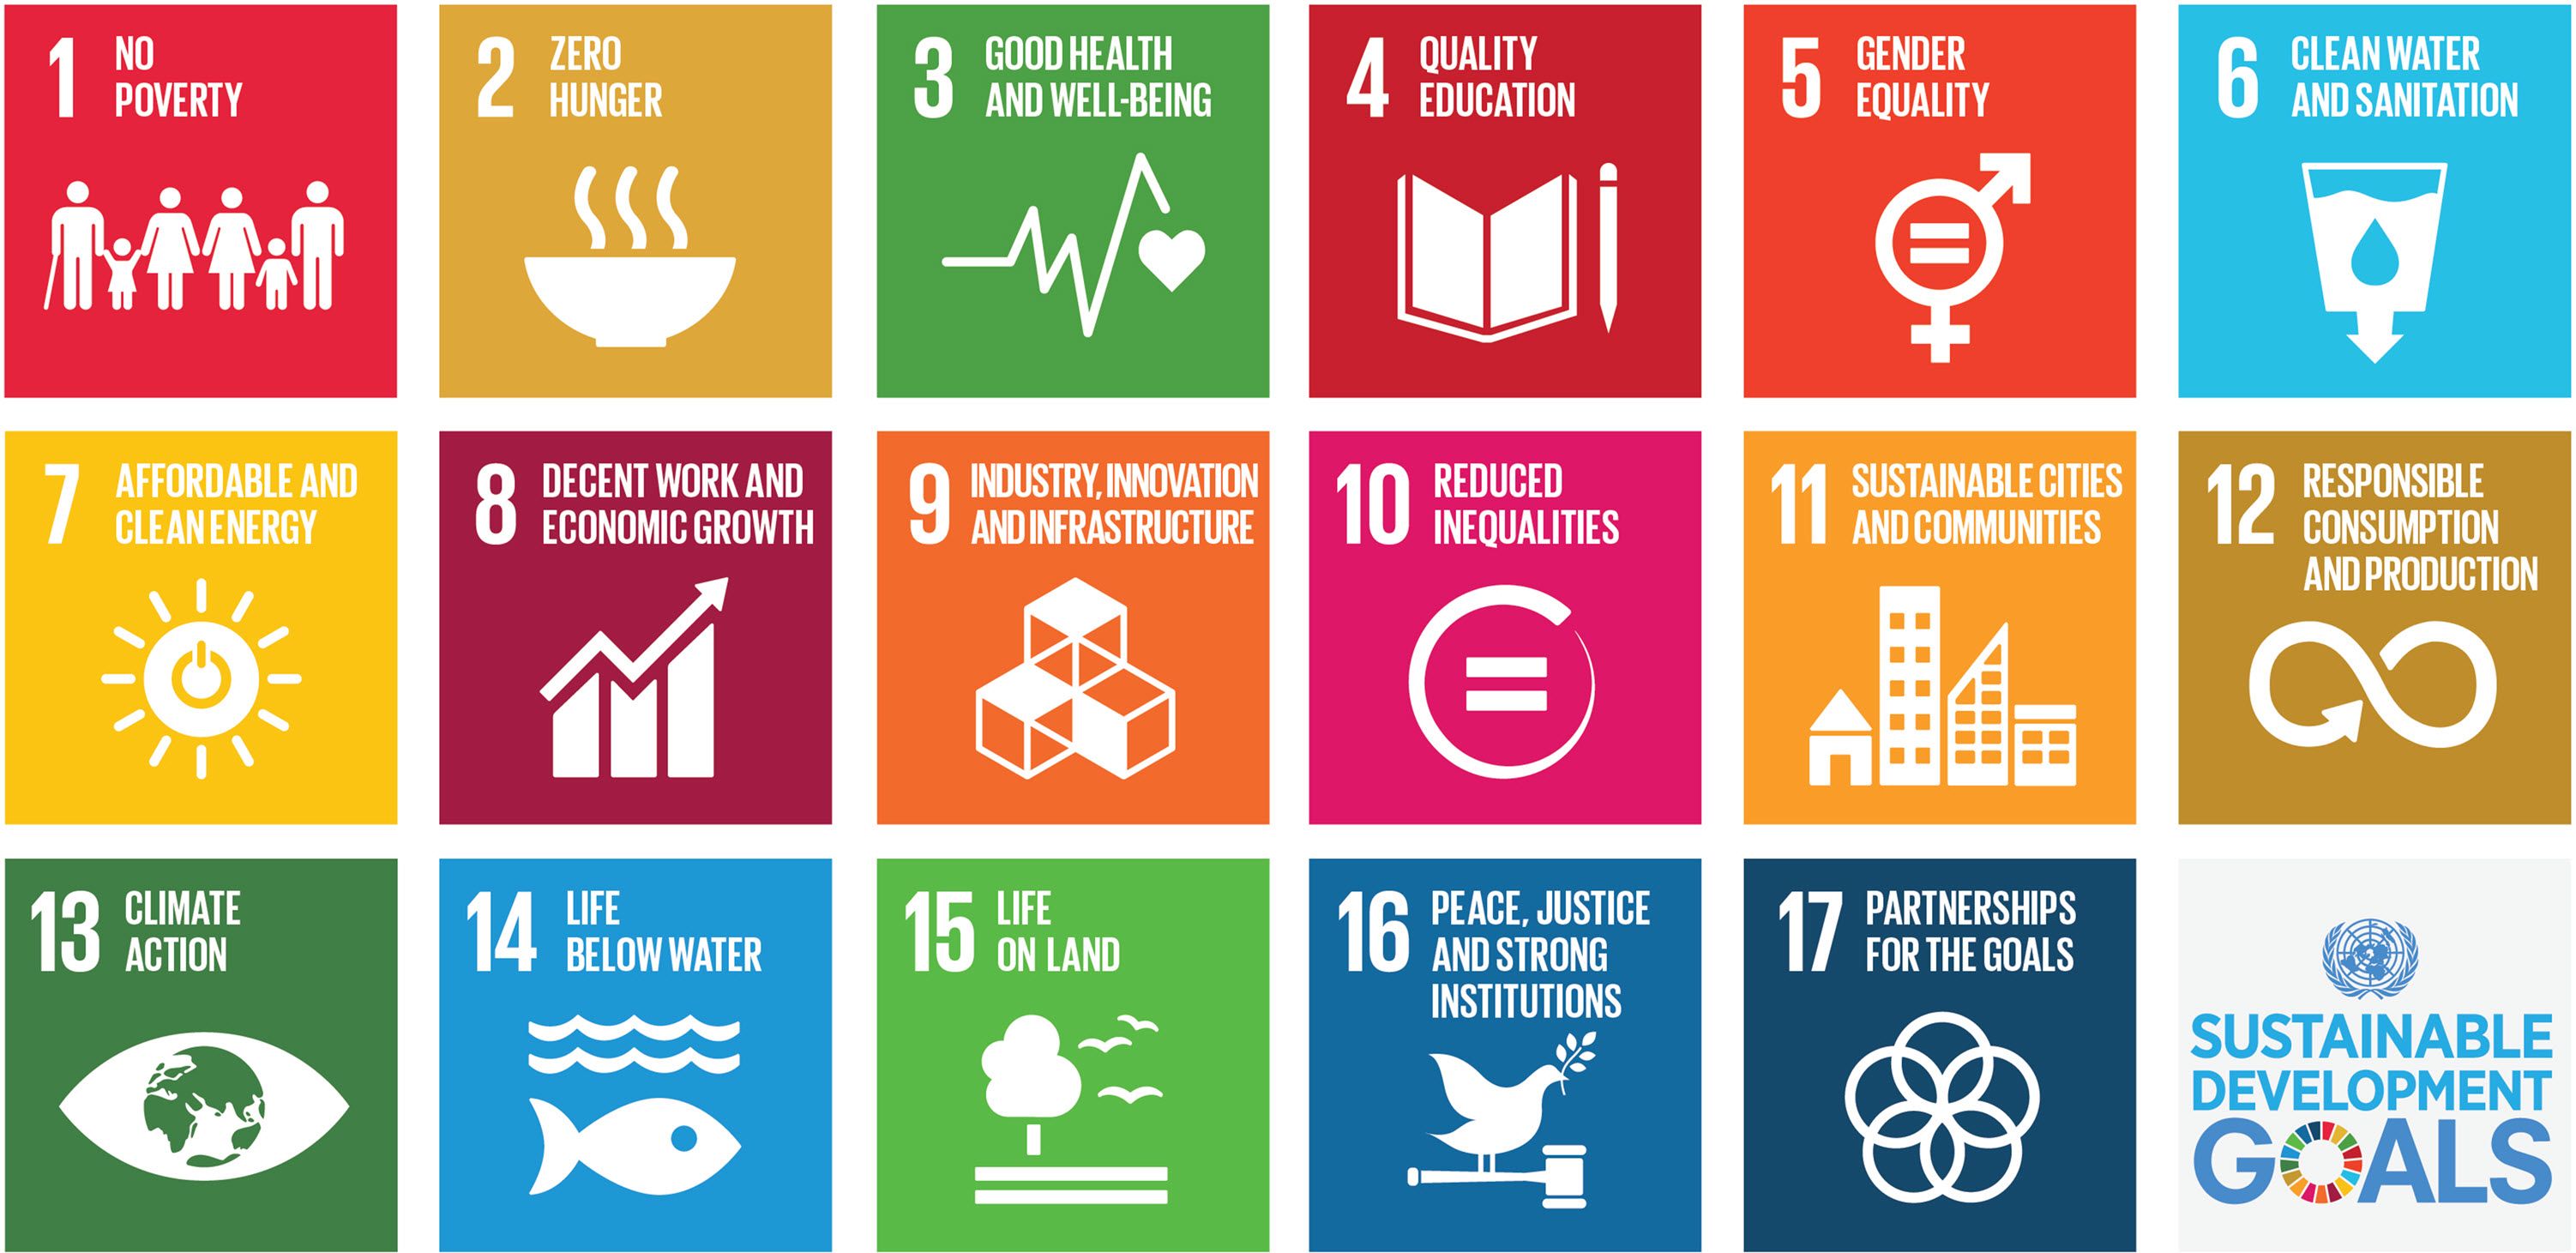 Objectifs de développement durable : Brune Poirson lance le site www.agenda-2030.fr